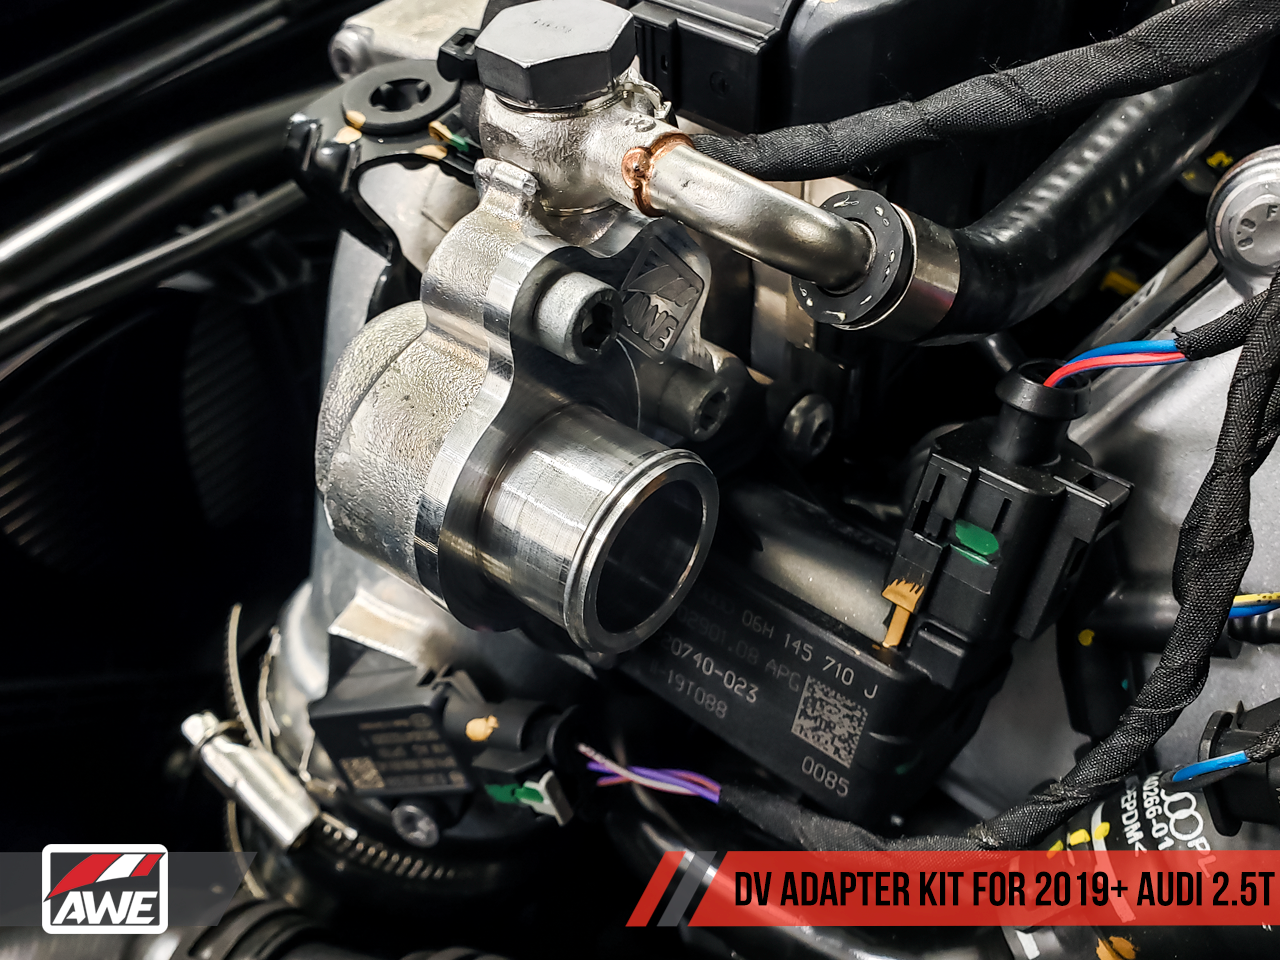 AWE DV Adapter Kit for 2019+ Models - 0